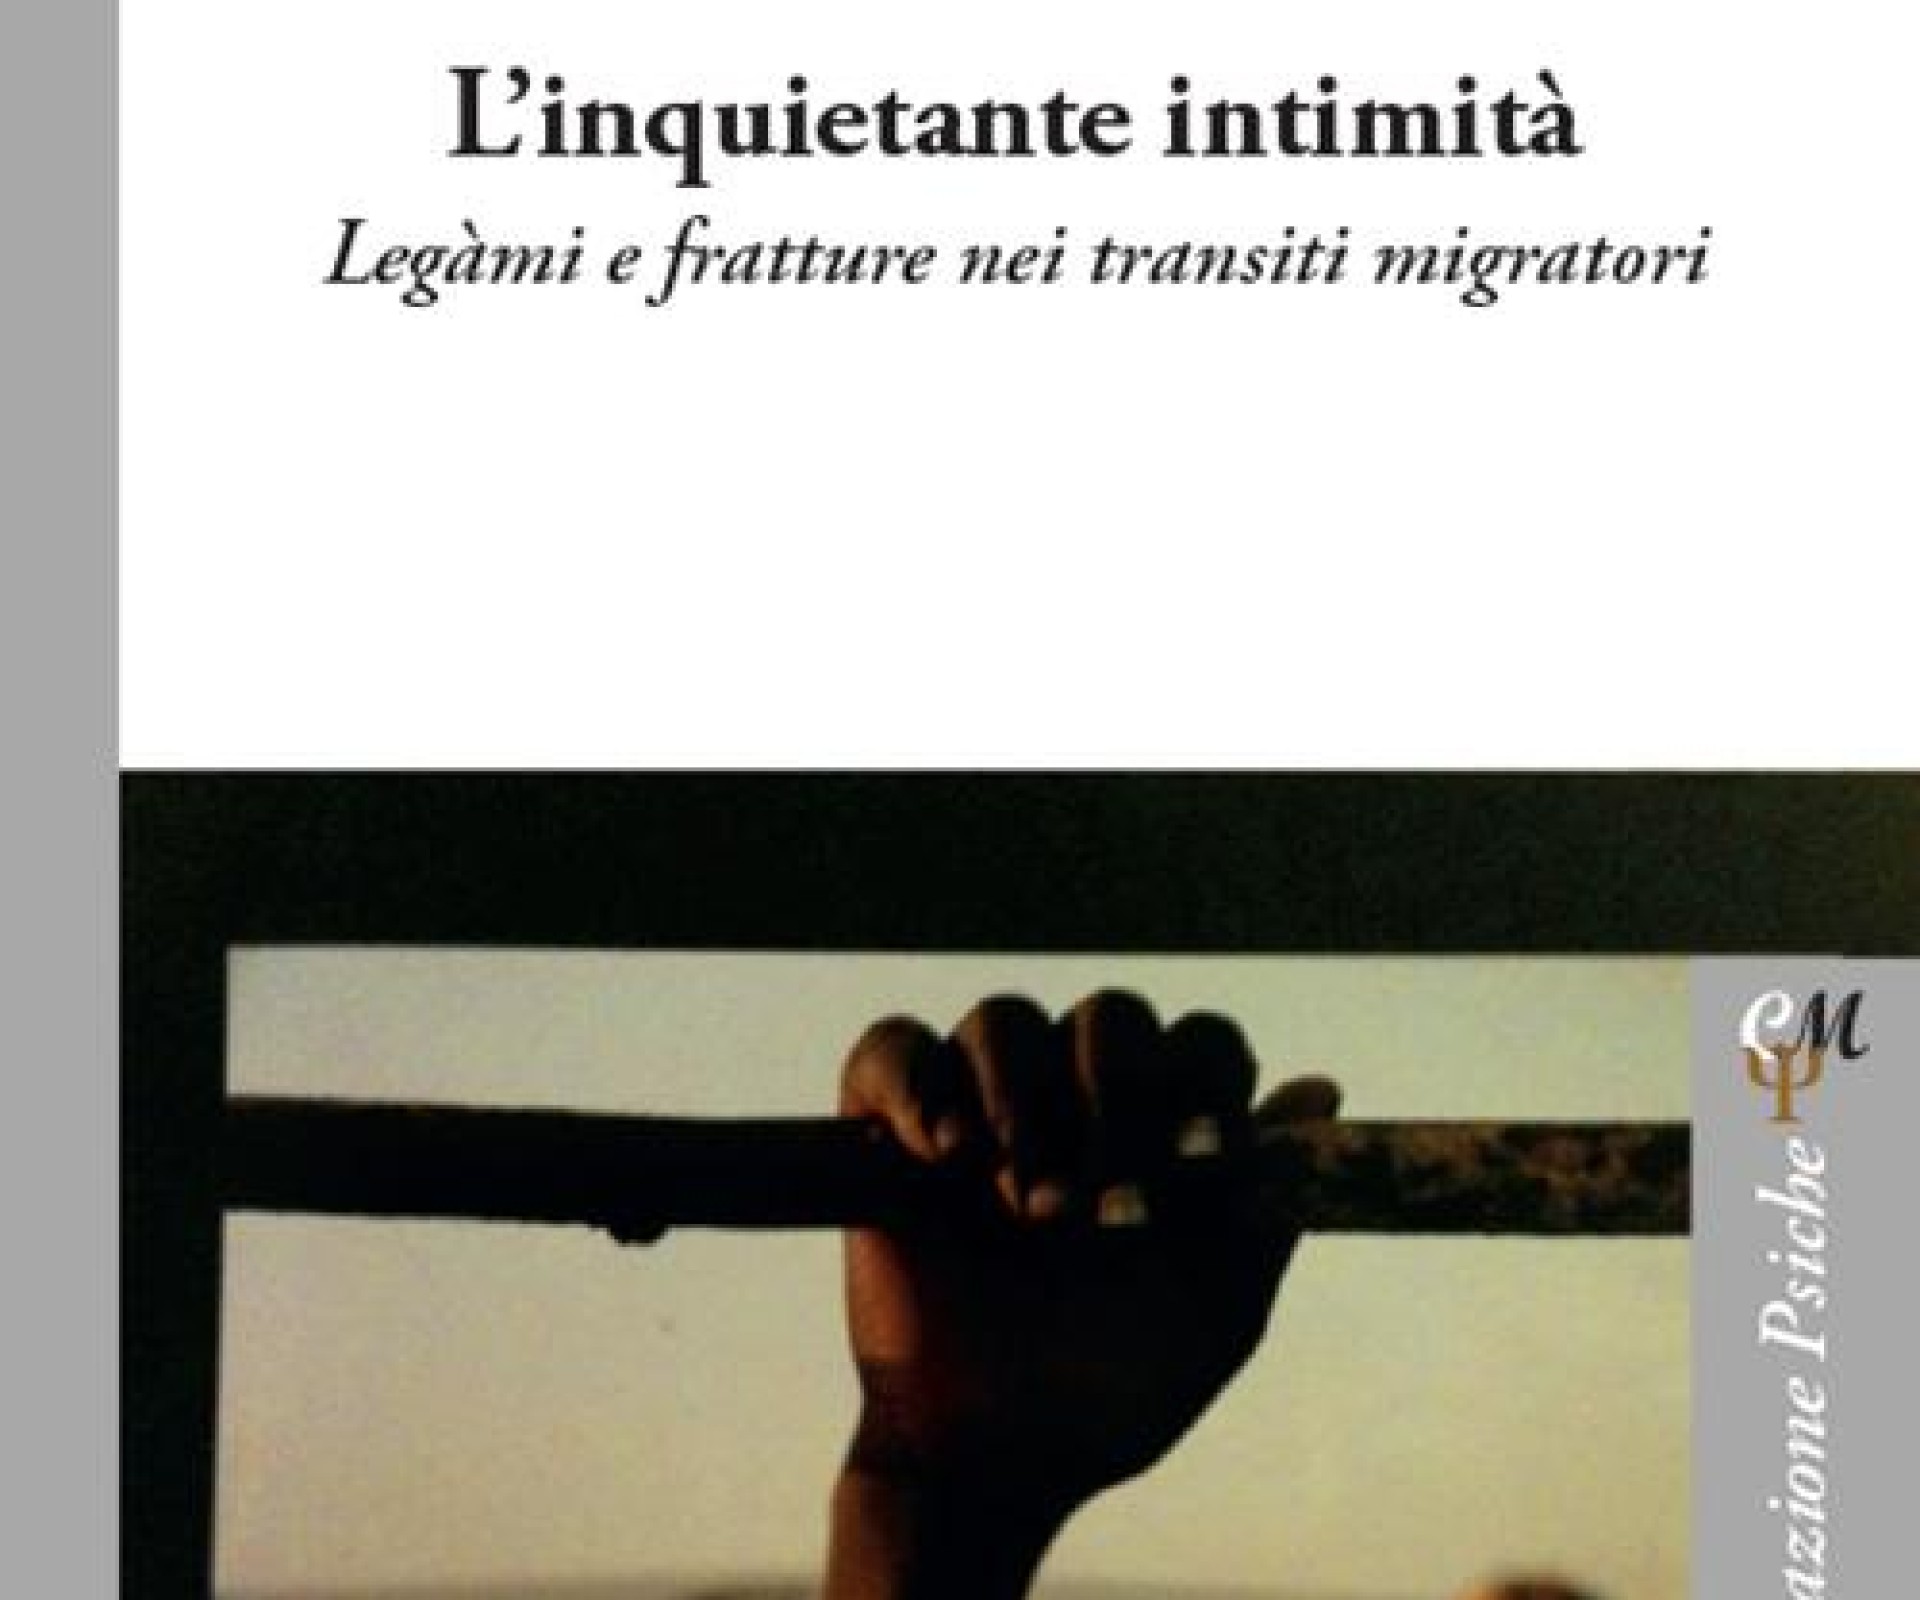 "L'INQUIETANTE INTIMITA'. Legami e fratture nei transiti migratori" di Virginia De Micco.